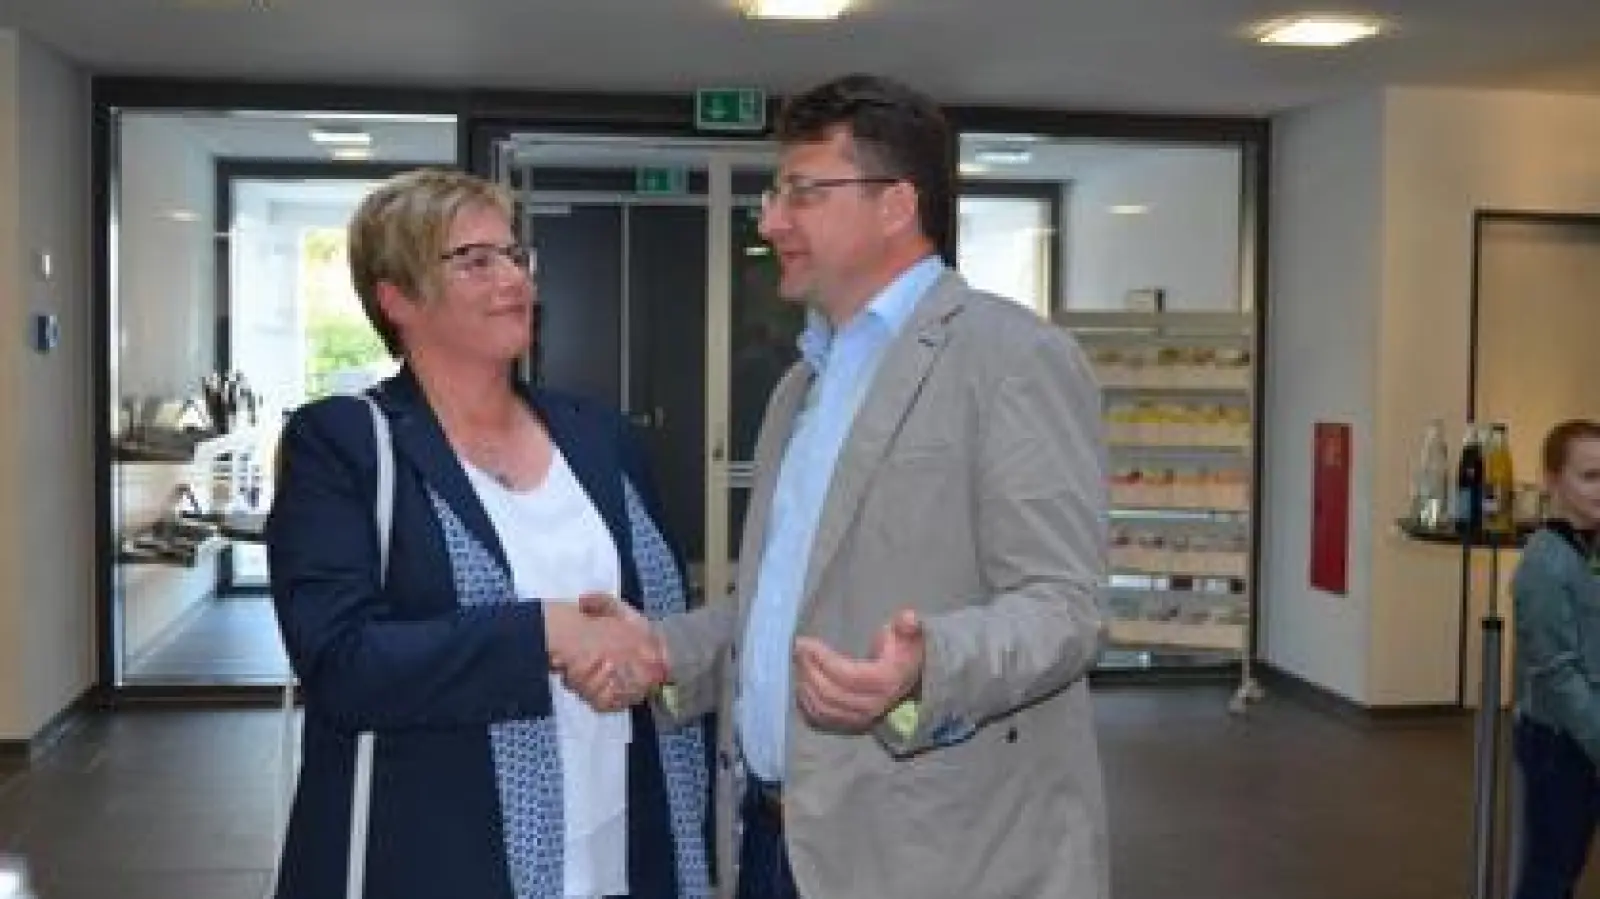 Dietrich Binder   ist neuer Bürgermeister von Petersdorf. Seine Konkurrentin Angelika Pest gratulierte ihm. Die beiden sind sich einig, einen fairen „Wahlkampf” geführt zu haben. Beide wollten keinen „Machtkampf der Ortsteile”, wie Binder sagte.